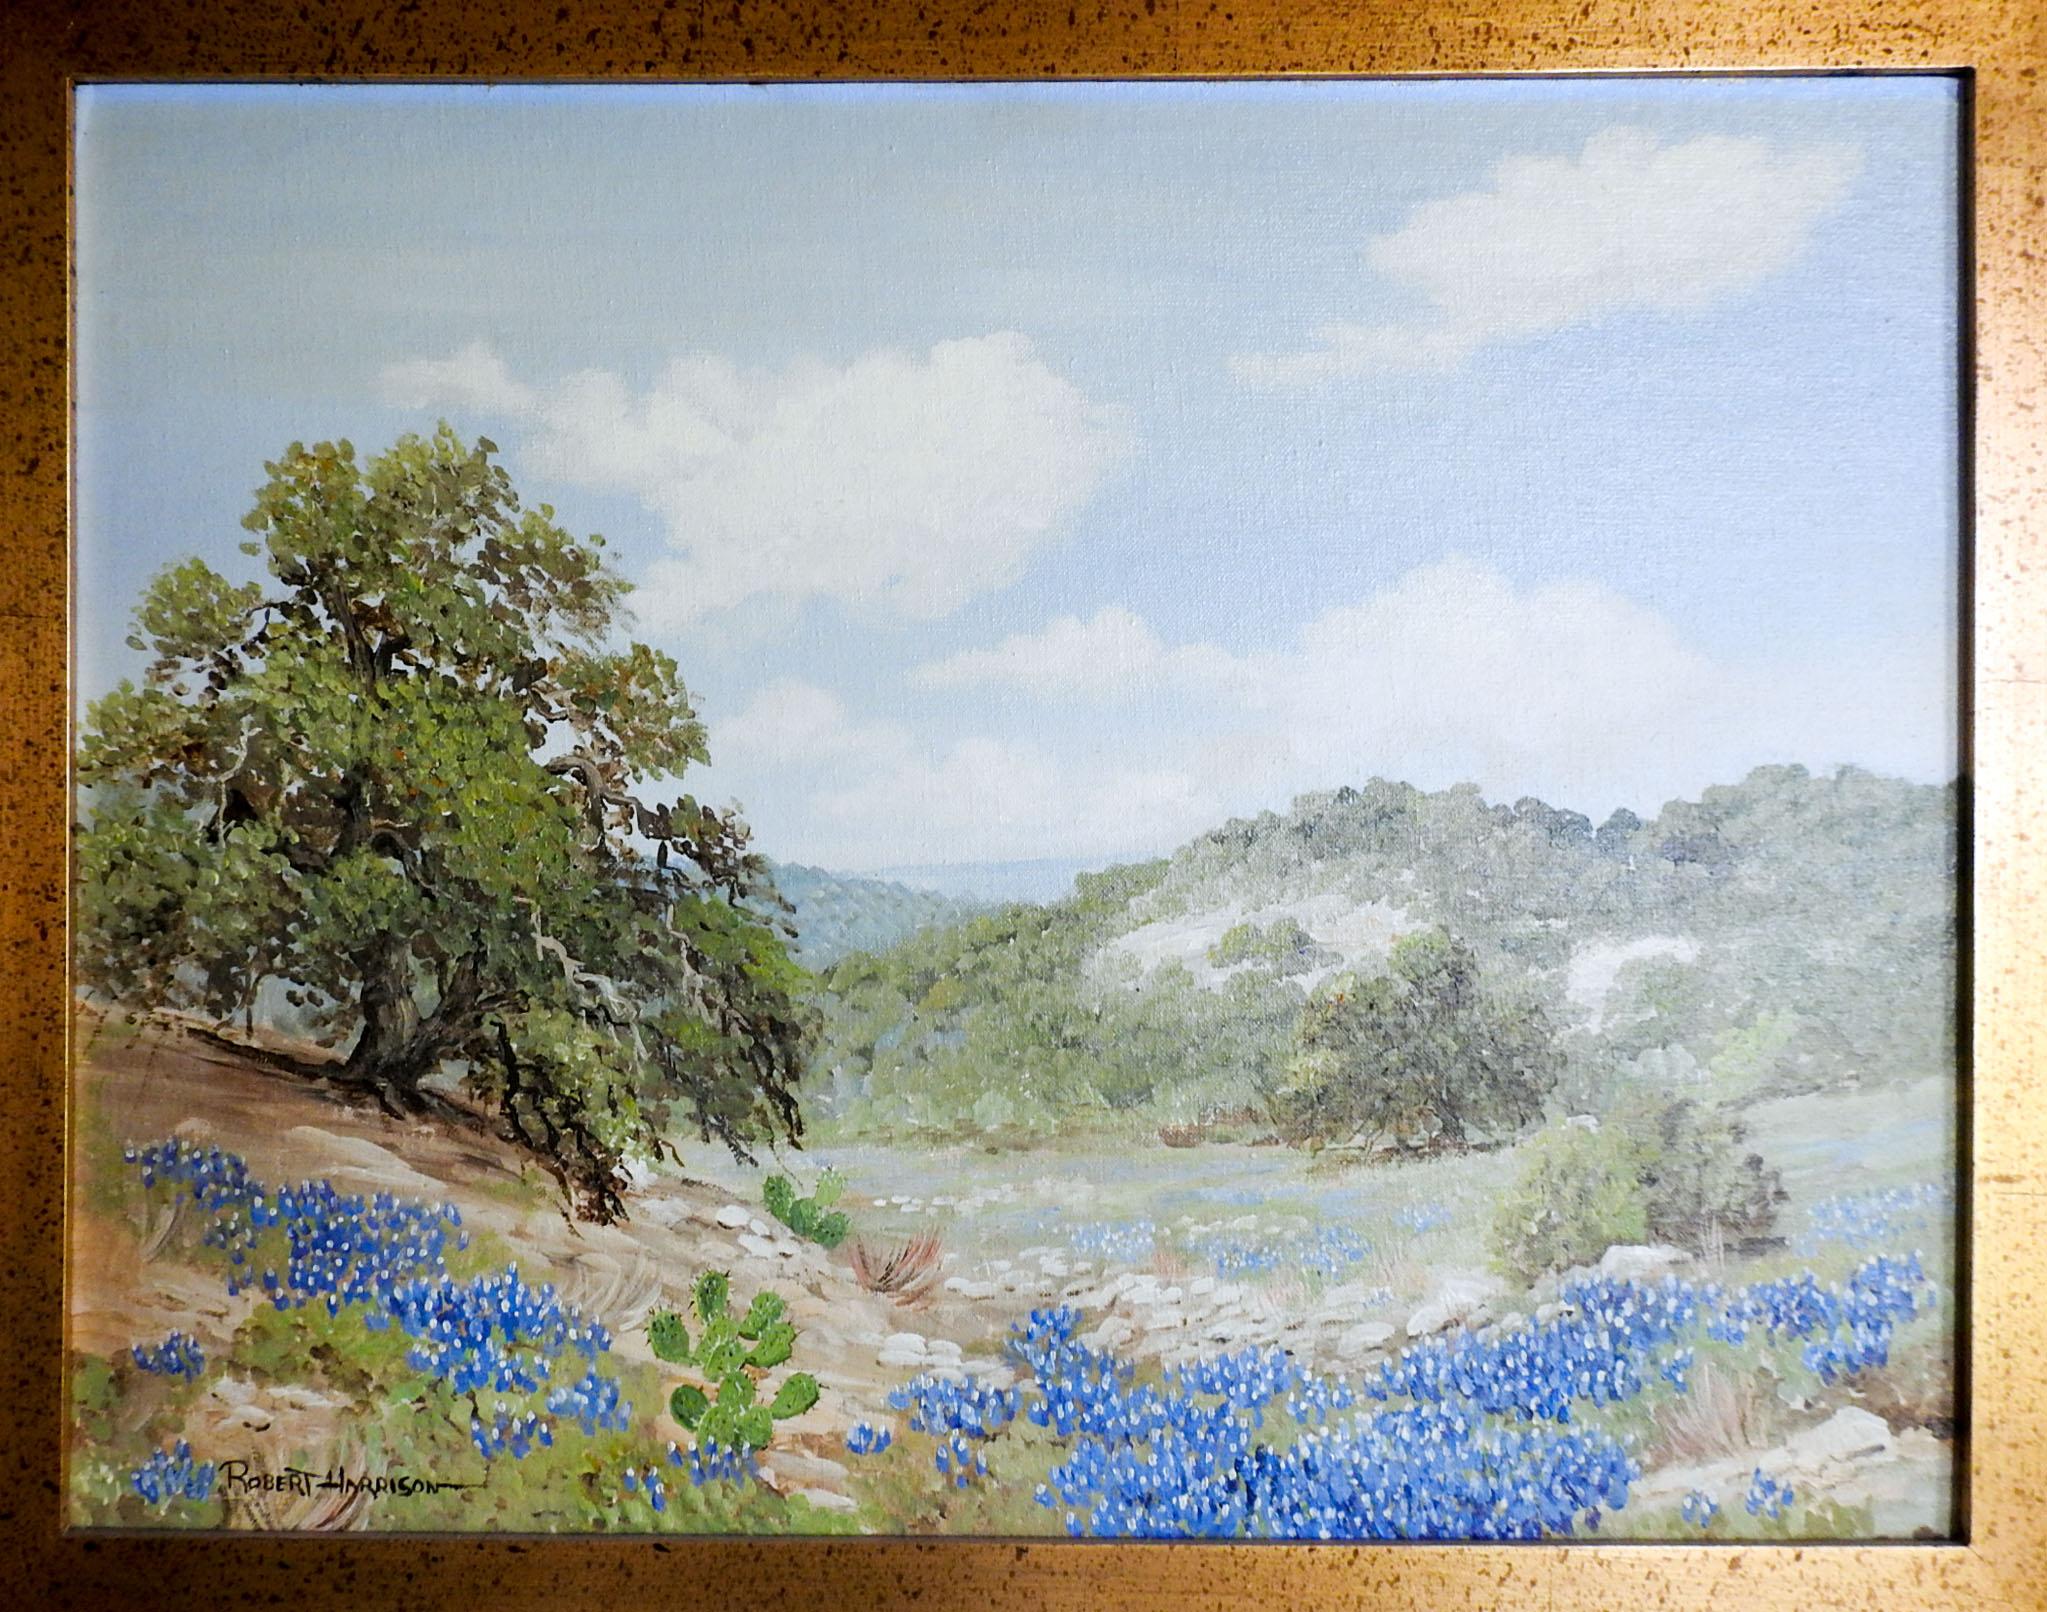 American Robert Harrison Bluebonnet Landscape Painting For Sale